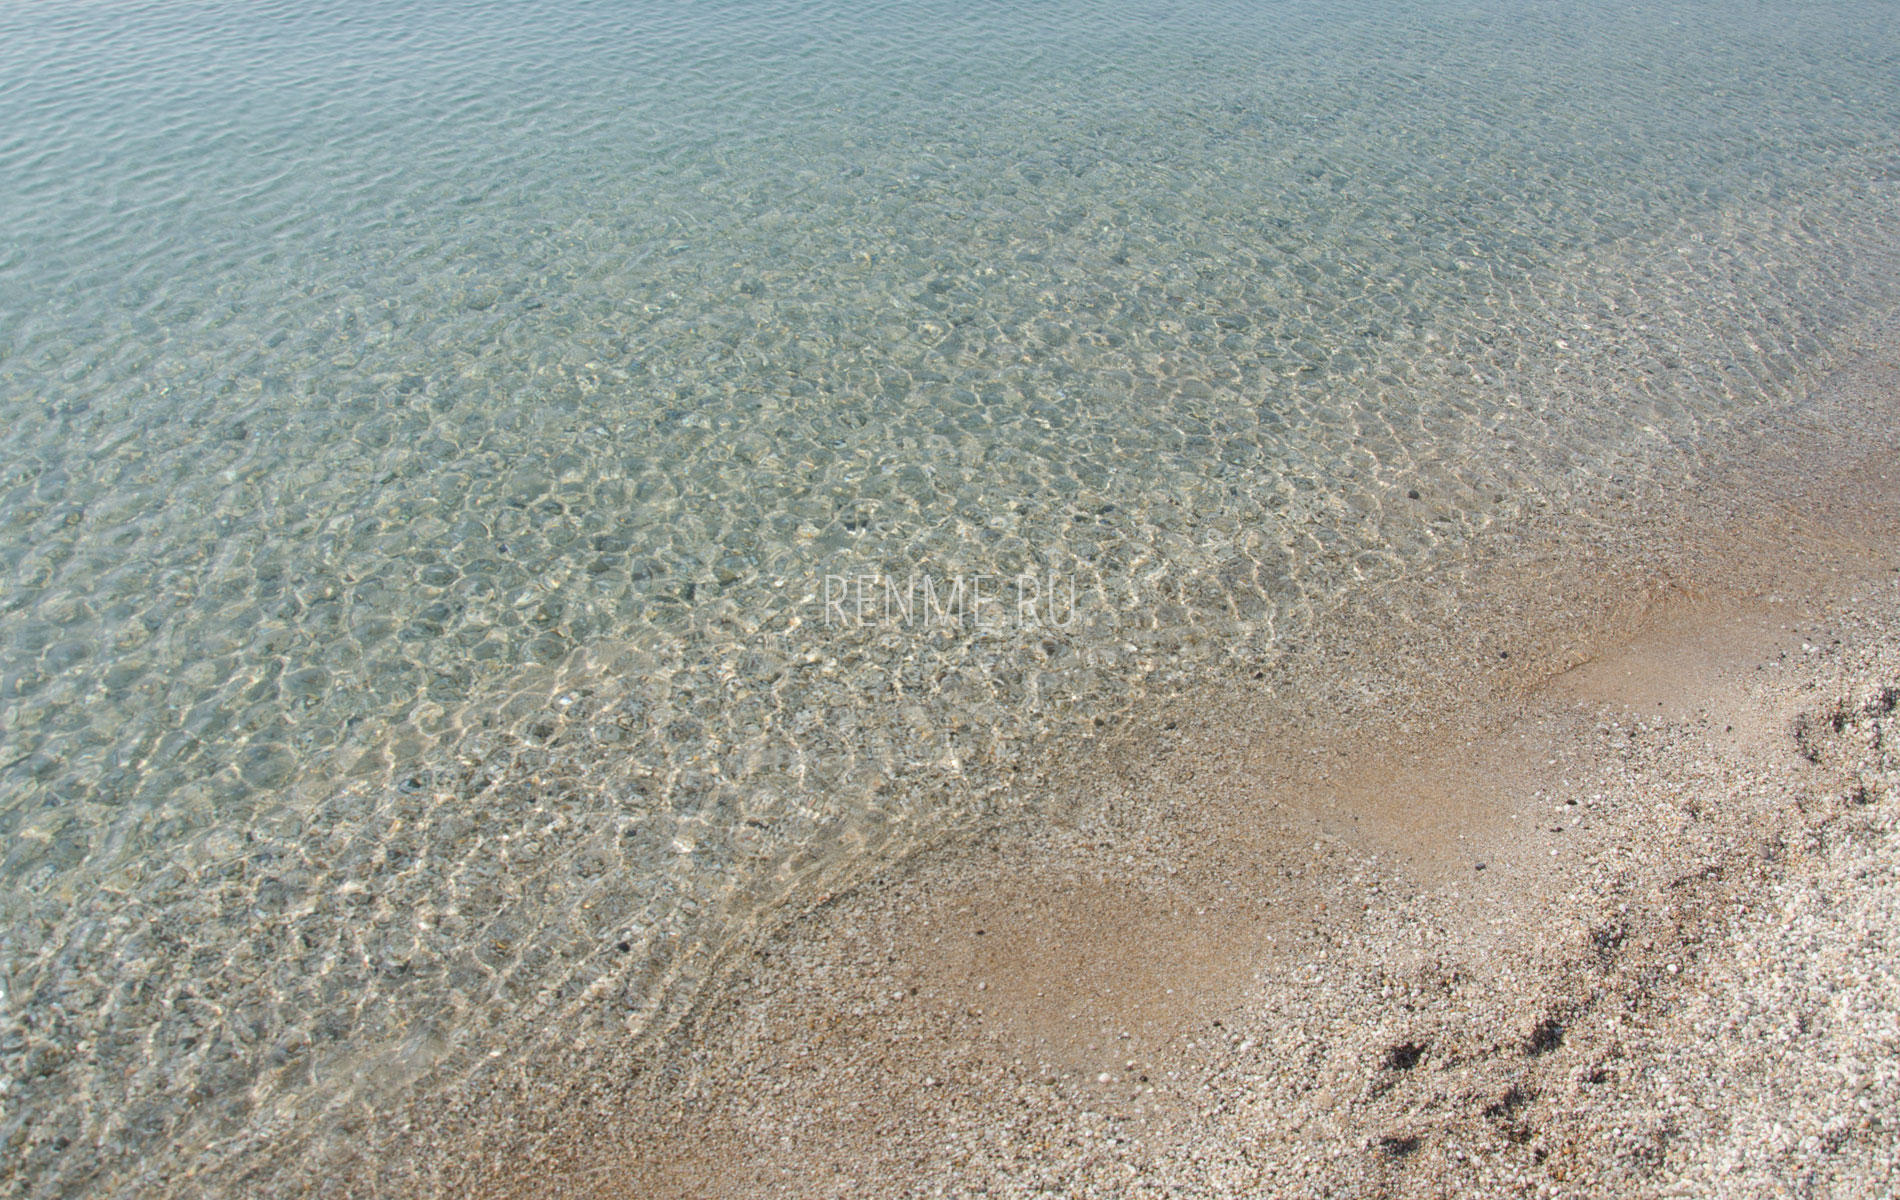 Евпаторийское море в октябре 2019. Фото Евпатории